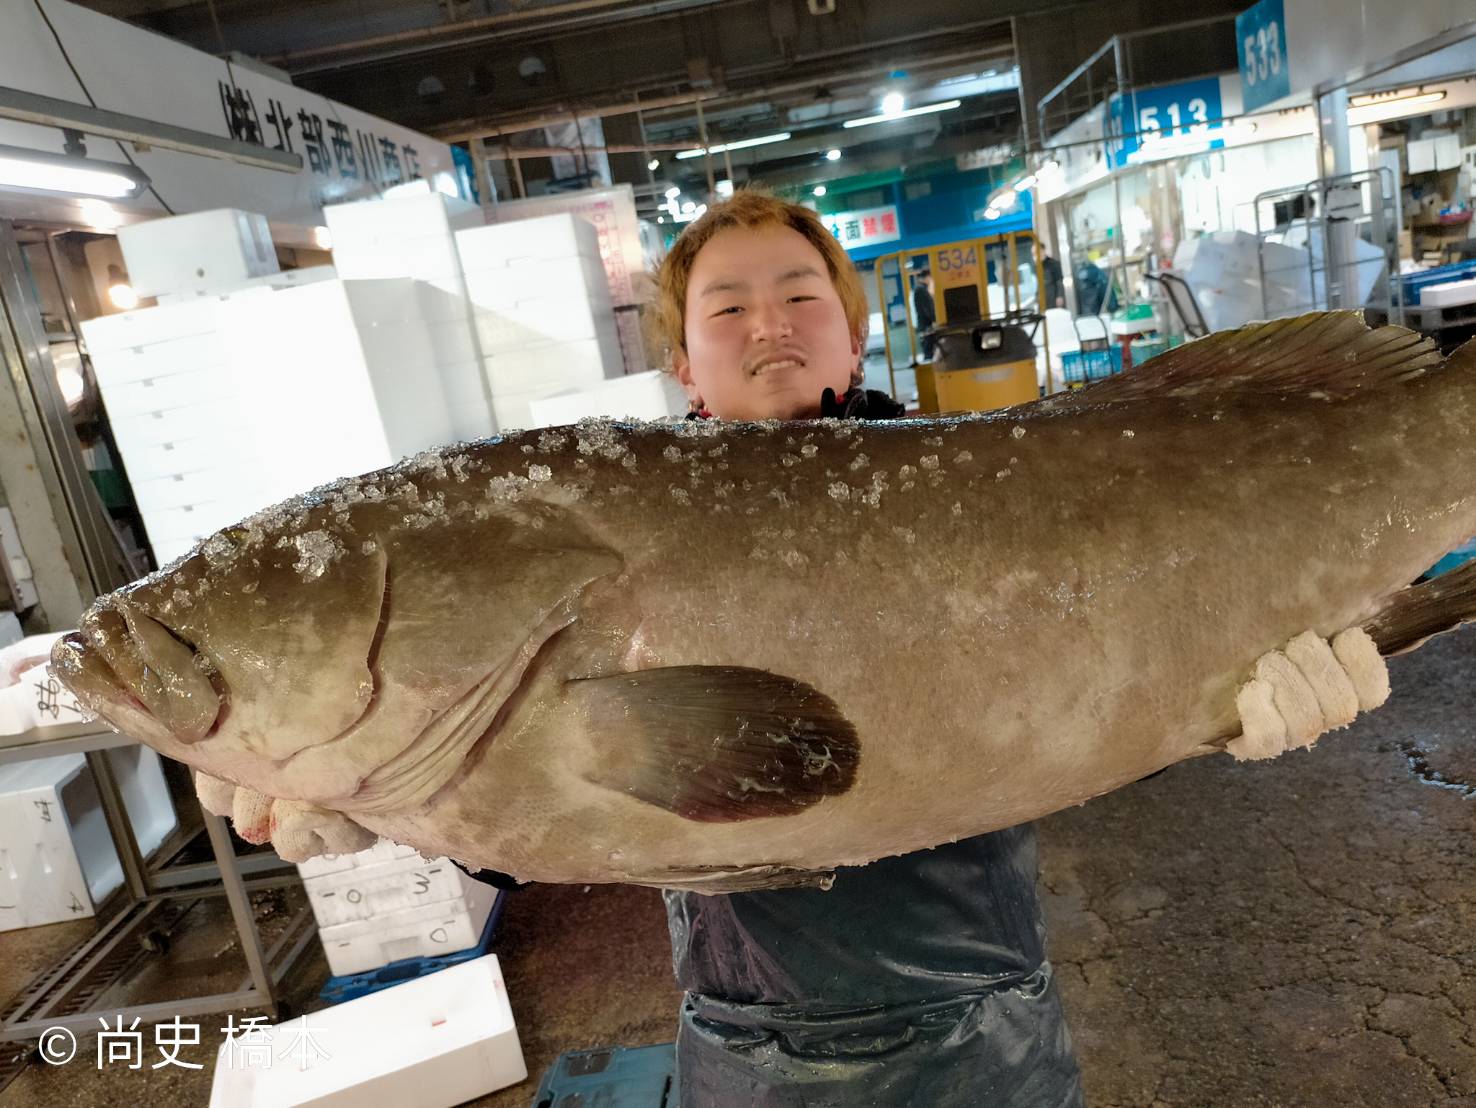 最高級魚 はまだい 天然くえ 魚の仕入れならお任せください さかなの仕入れ屋 大阪で美味しい魚を安く仕入れる